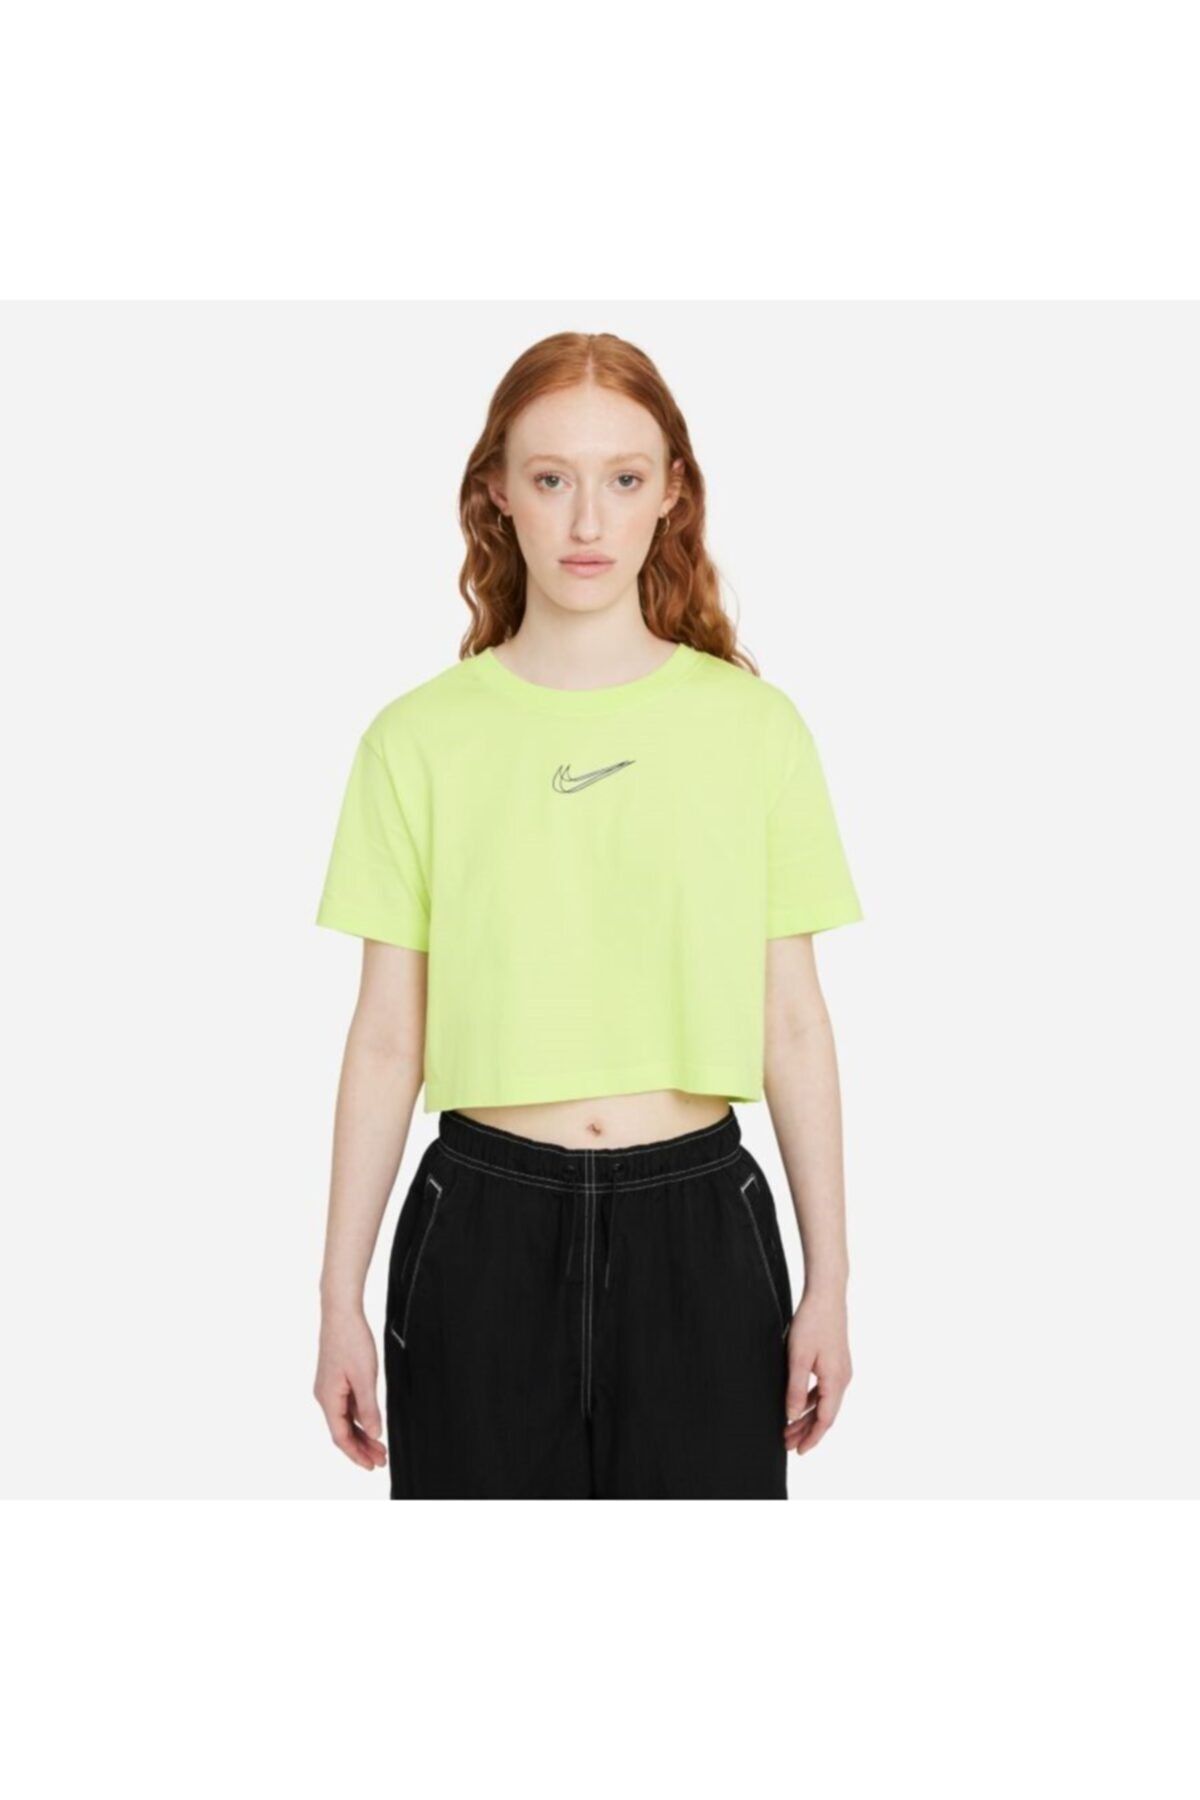 Nike Sportswear Women's Cropped Dance Kadın T-shirt